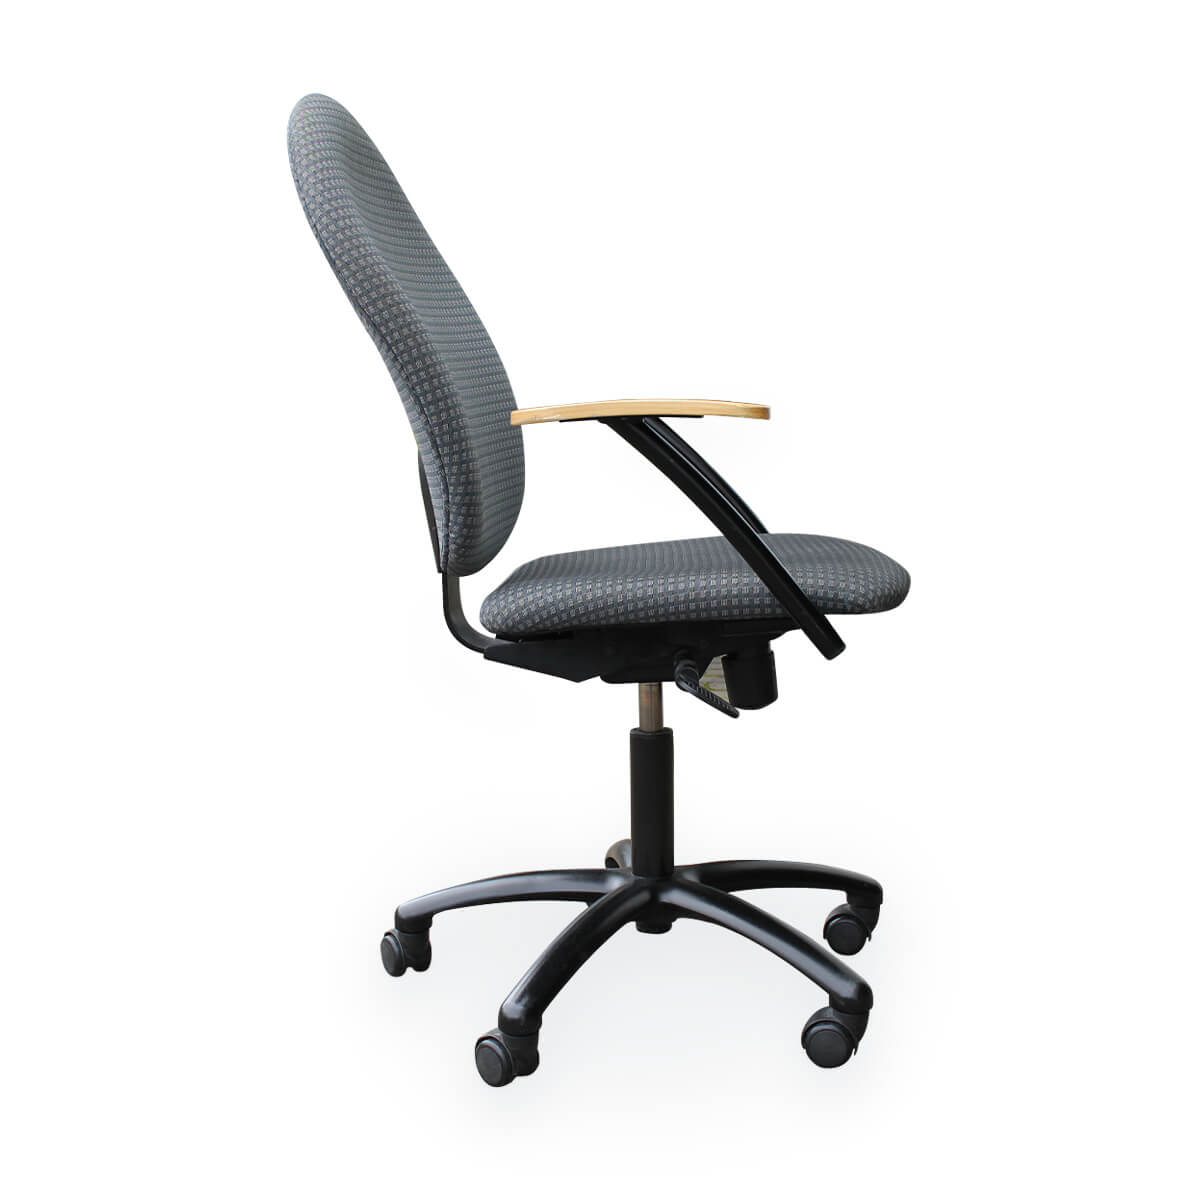 Naudotos biuro kėdės - Kitas - Top star